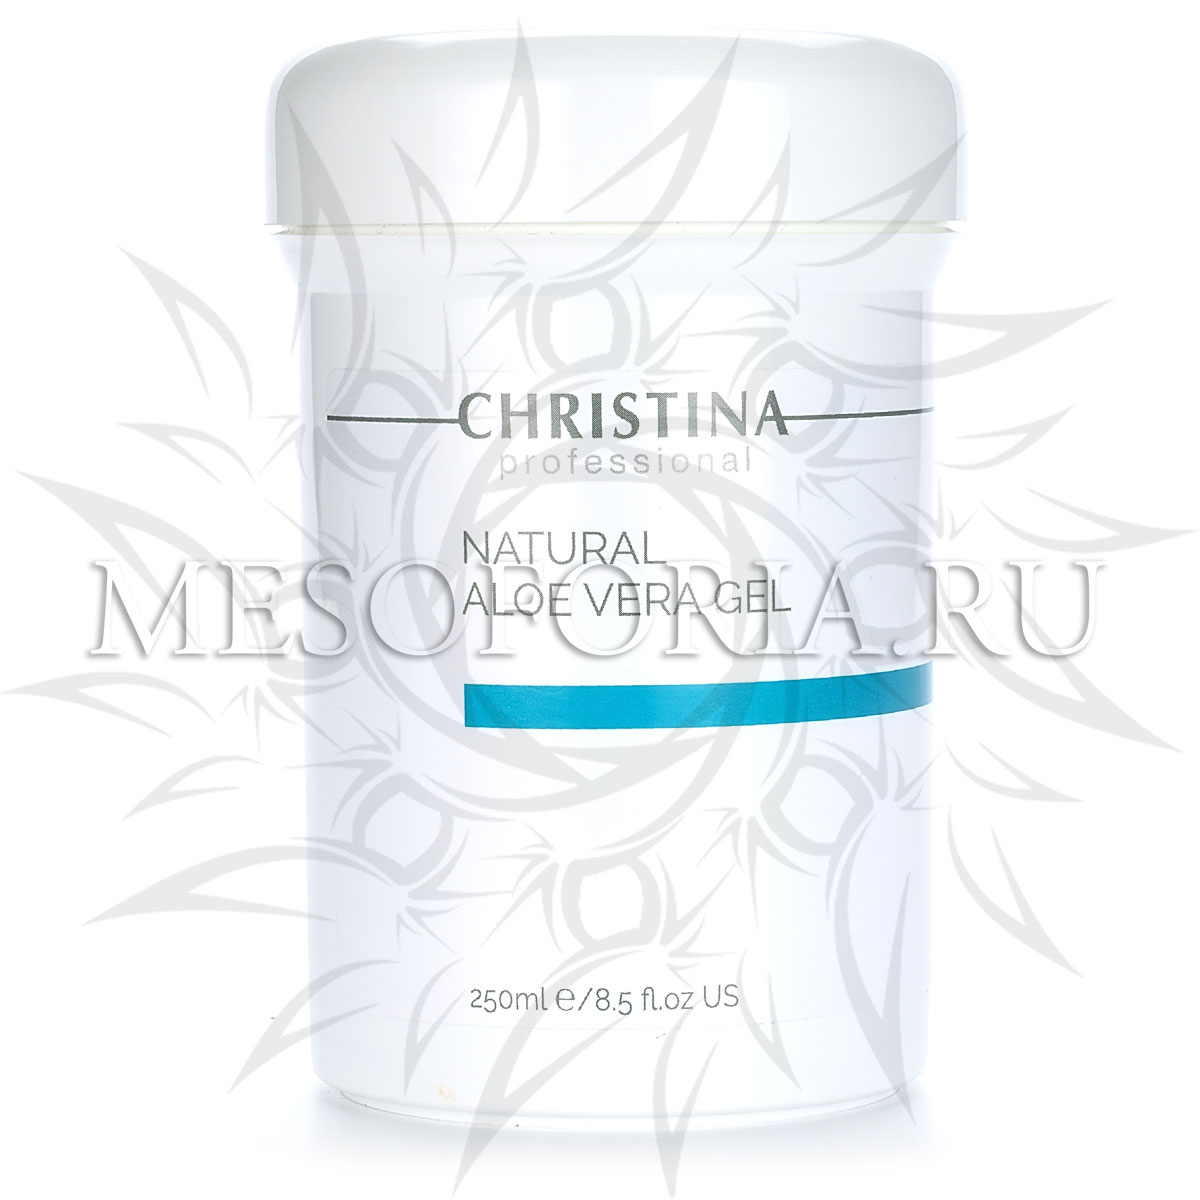 Натуральный гель с алоэ вера / Natural Aloe Vera Gel, Christina (Кристина) – 250 мл